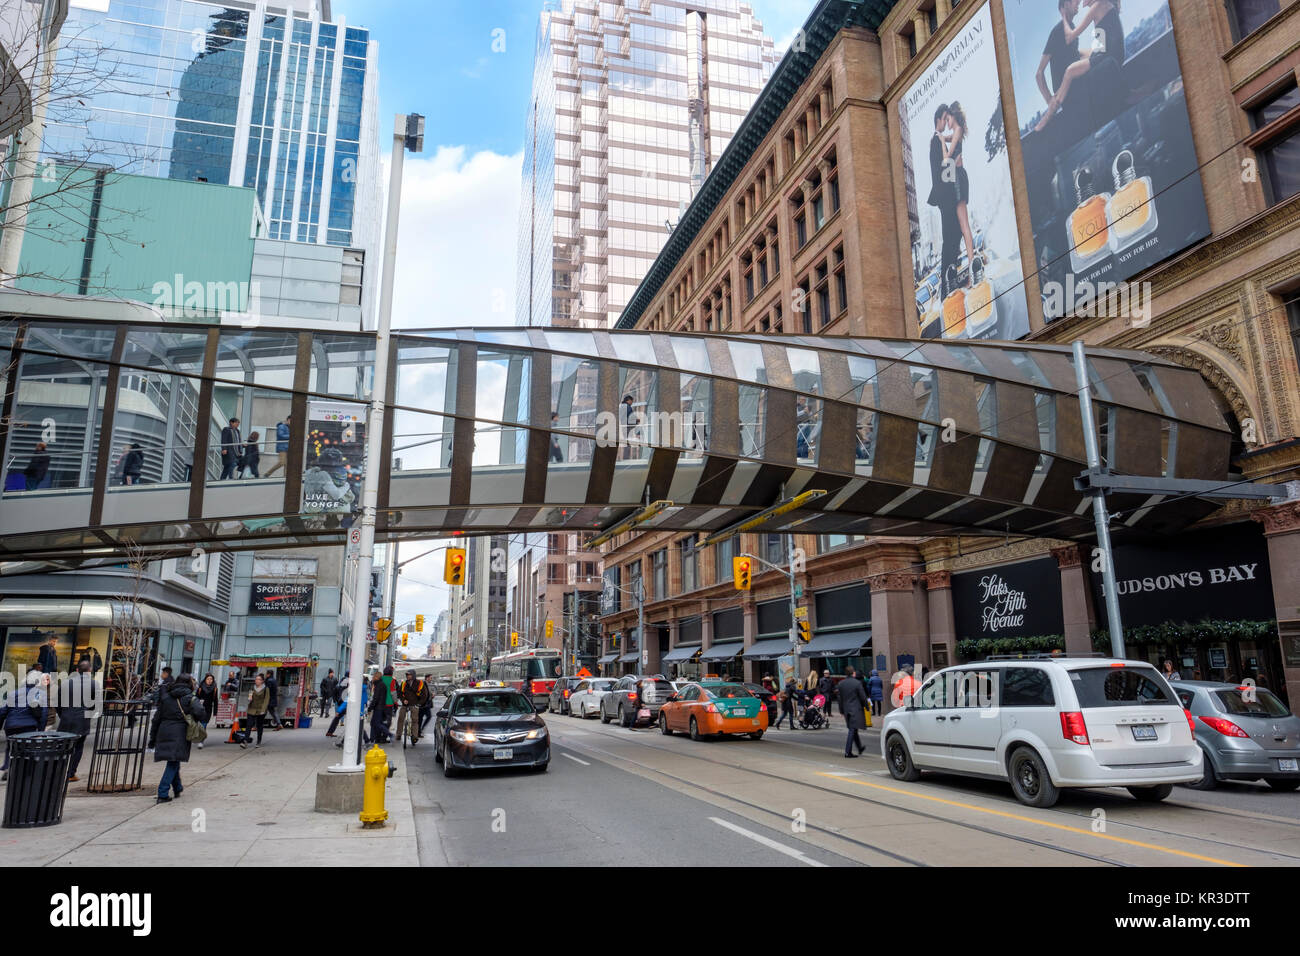 Pedway, elevato passaggio pedonale che collega Toronto Eaton Centre shopping centre e Saks Fifth Avenue Toronto store, Queen Street West, Canada. Foto Stock